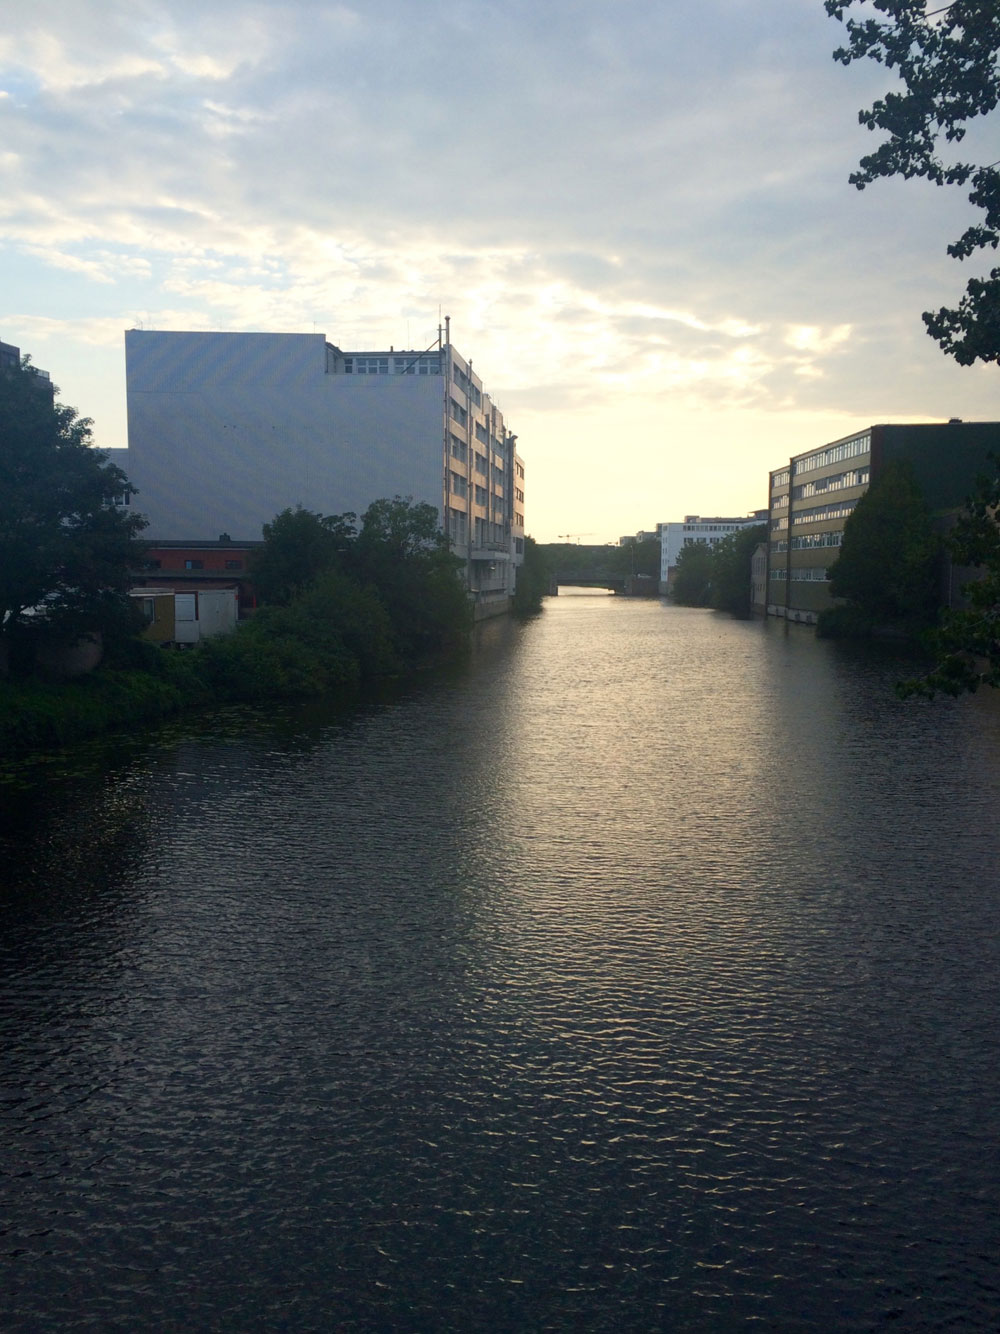 Central canal in Borgfelde